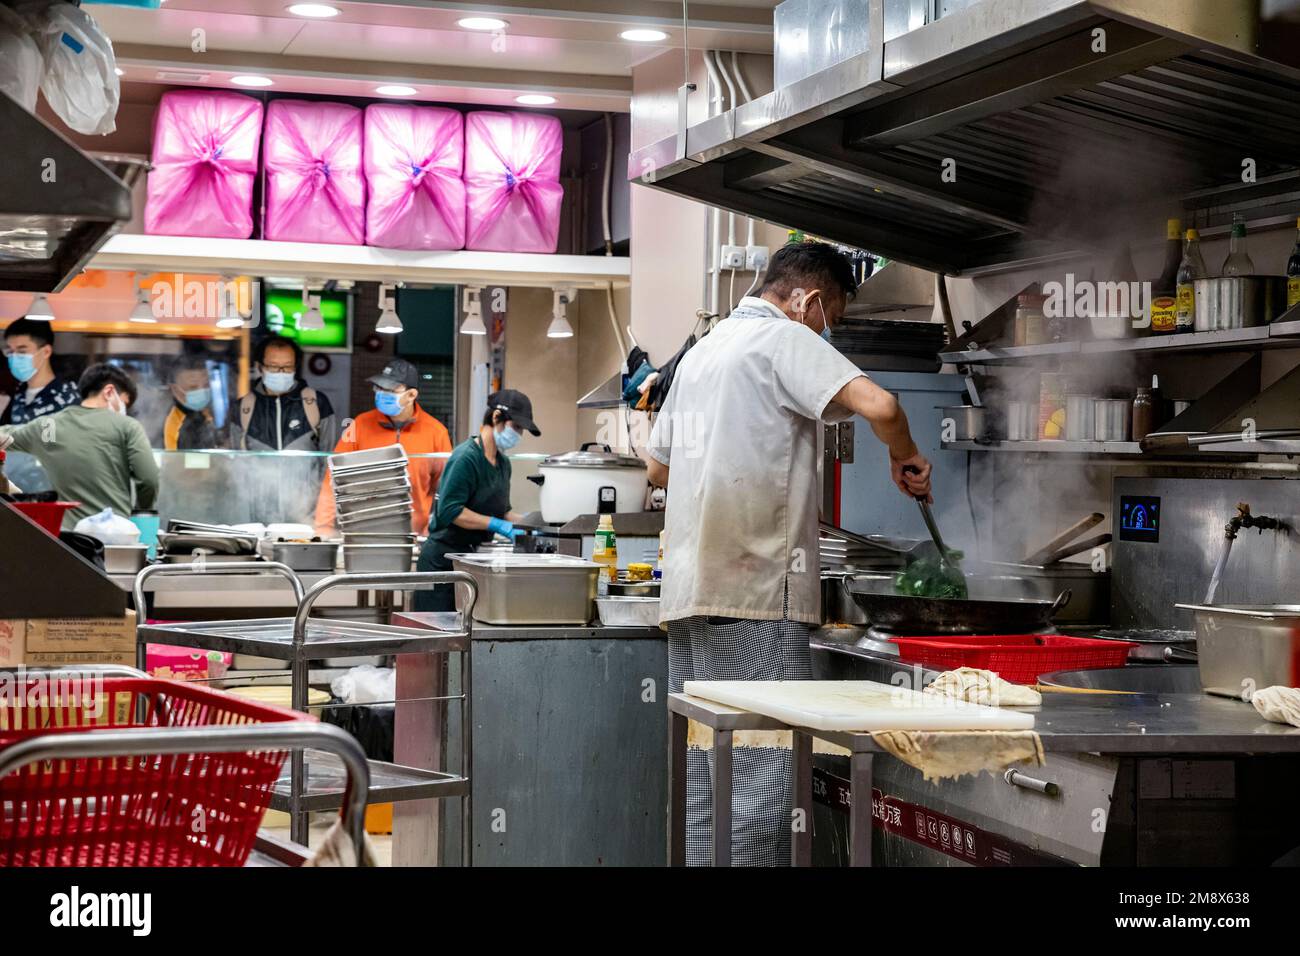 Chinesische Restaurants beginnen wieder zu öffnen, während die Pandemie Regeln gesenkt werden, Hongkong, China. Stockfoto